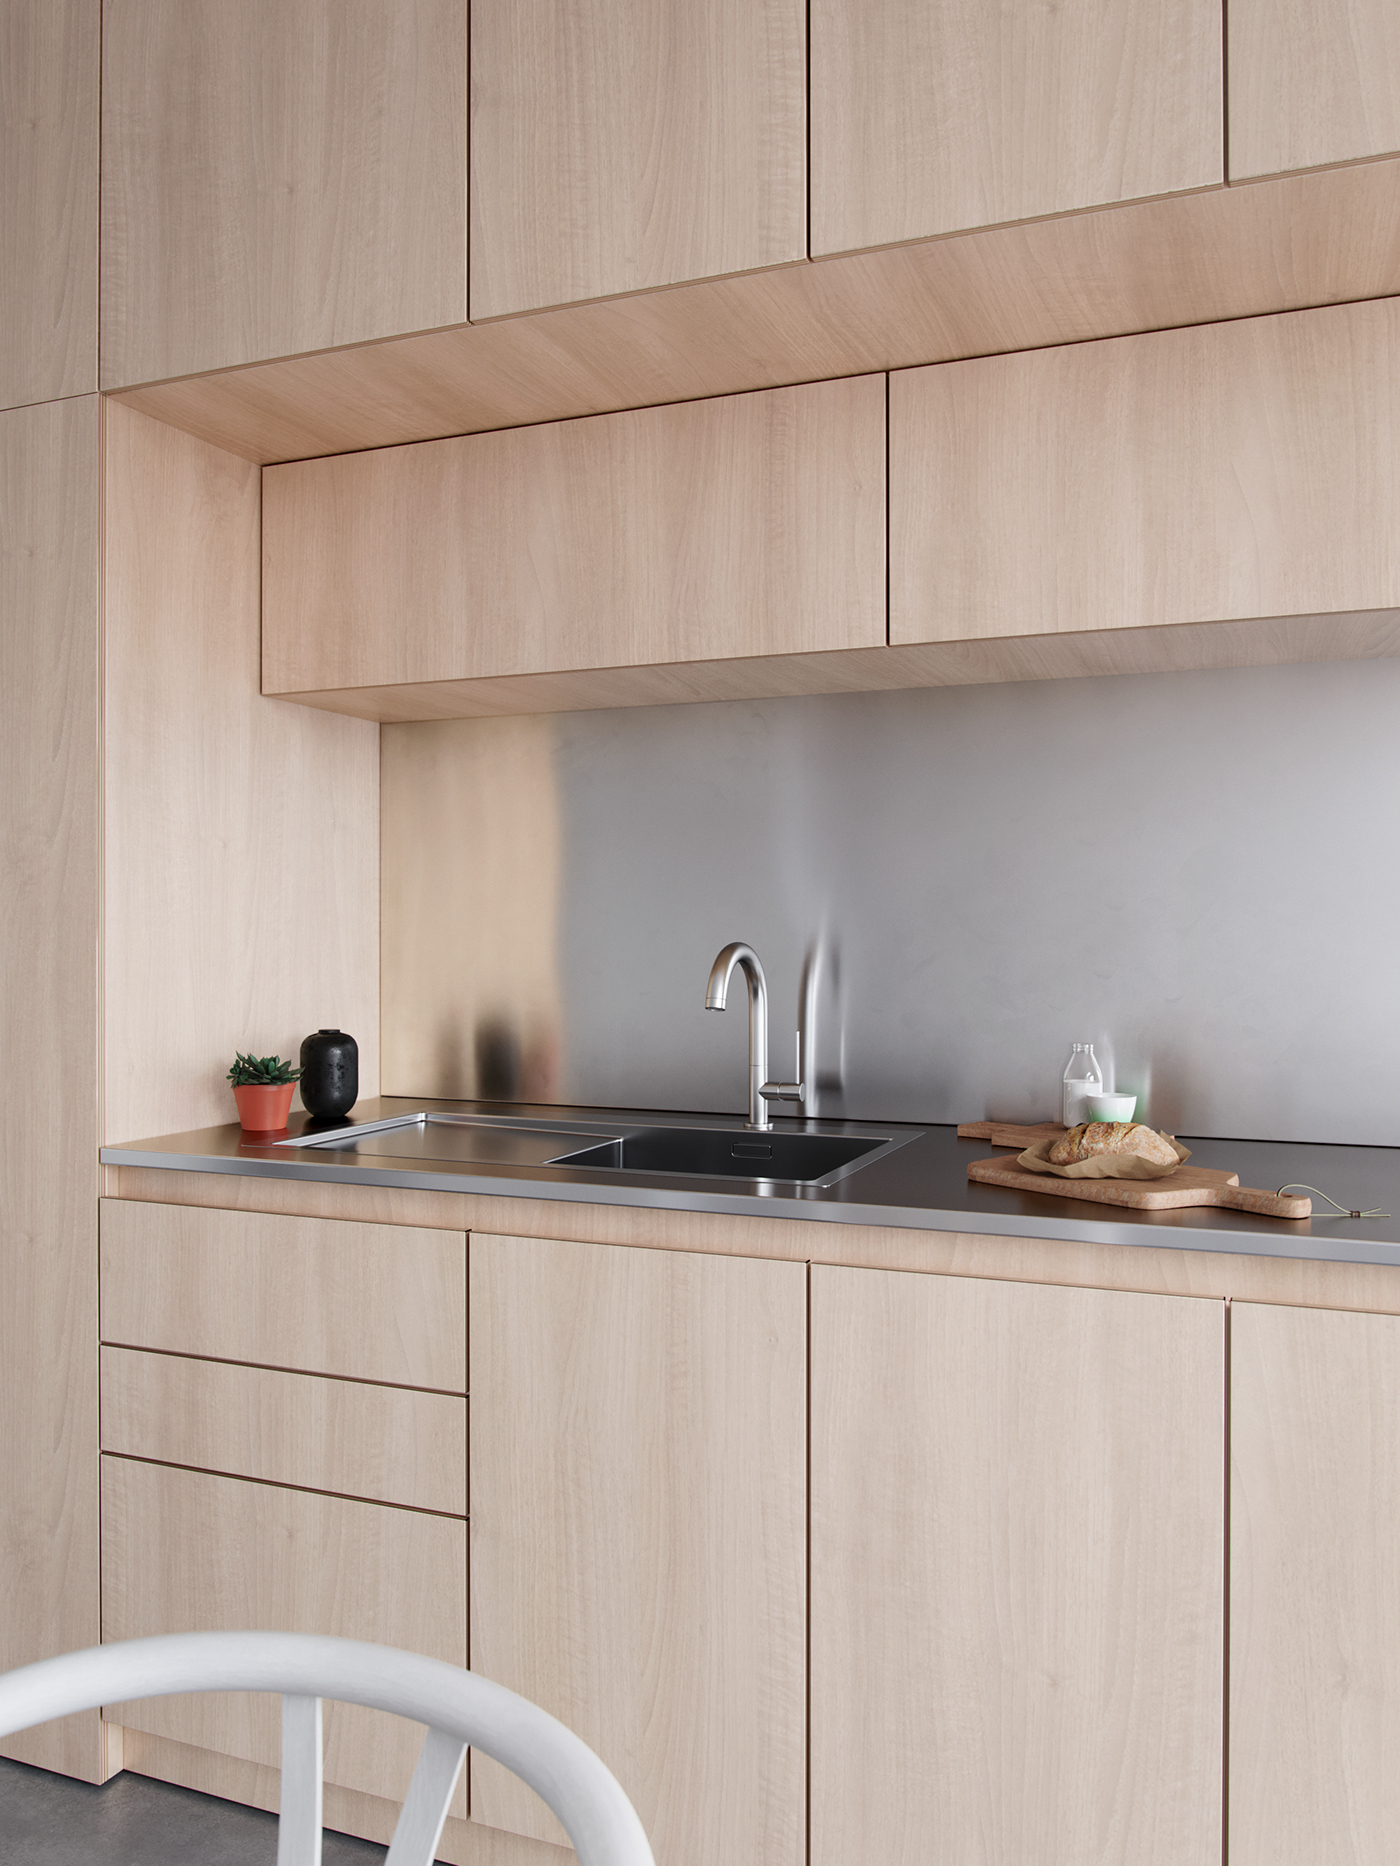 architecture interior design  Minimalism Scandinavian kitchen visuliazation 3D rendernig